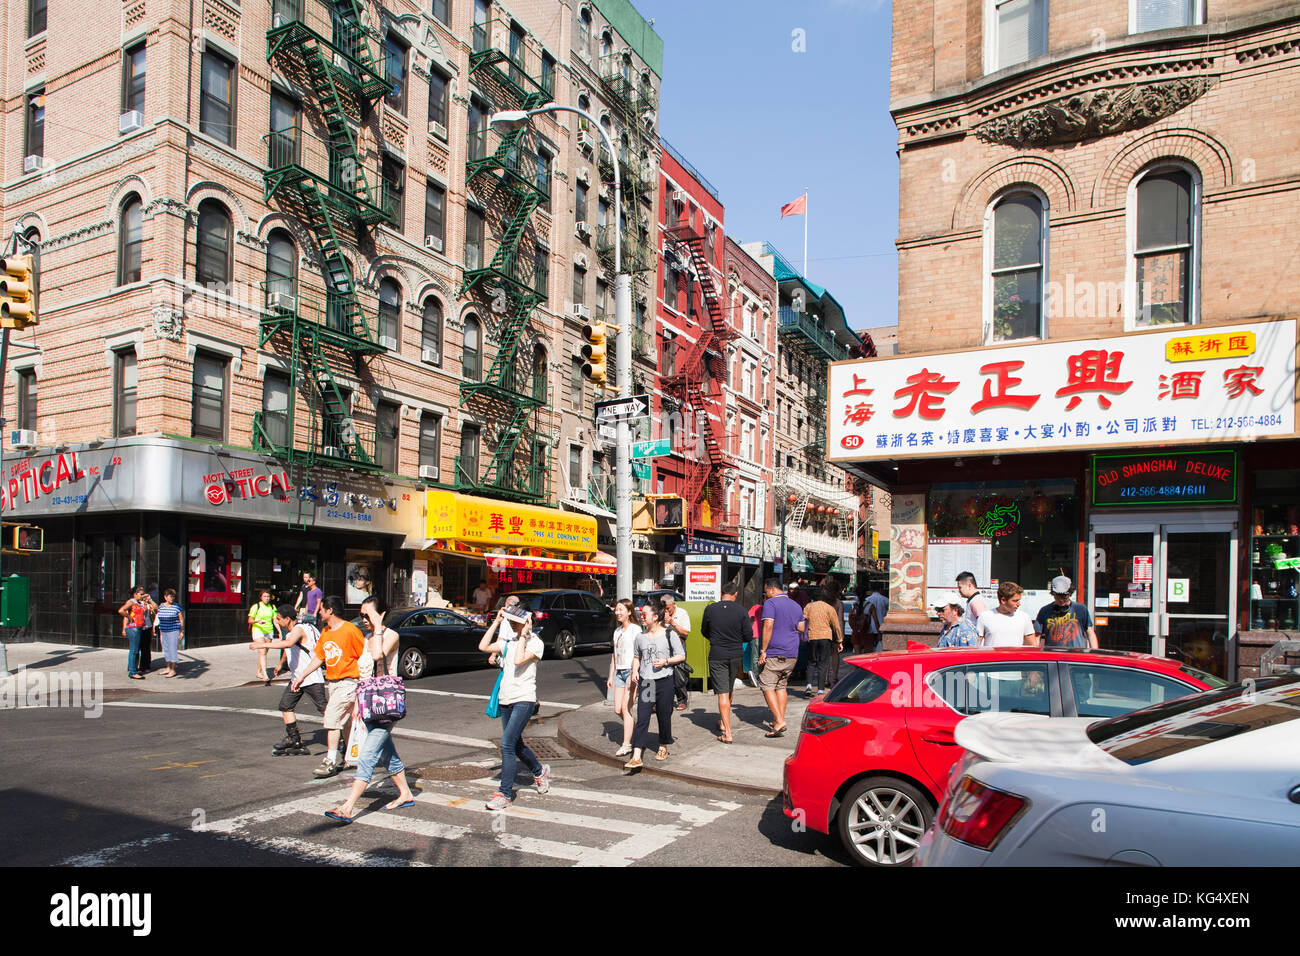 Mott street and Bayard street, China town, Manhattan, New York, USA, America Stock Photo